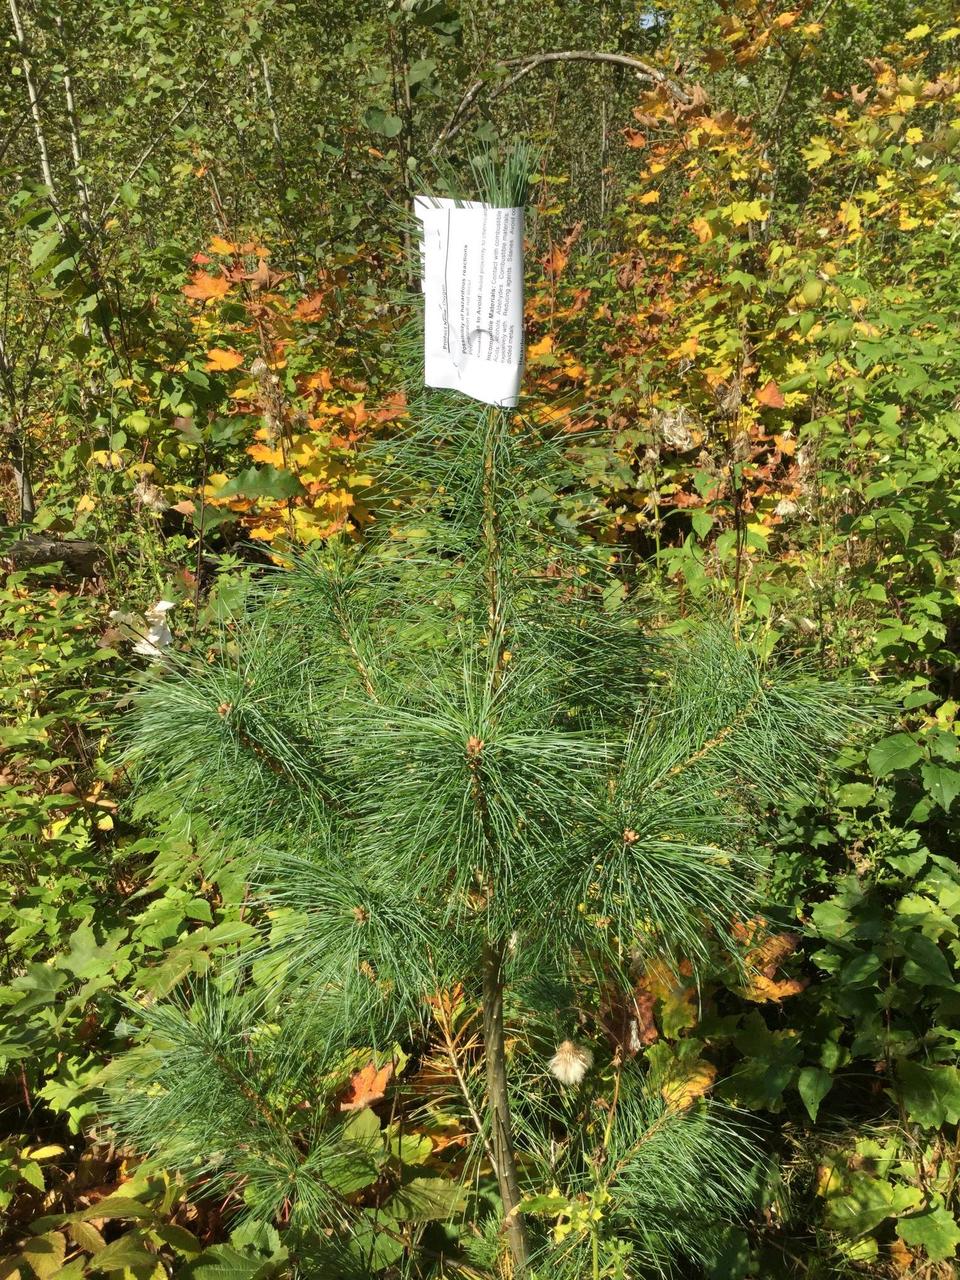 Bud capped white pine seedling 2019